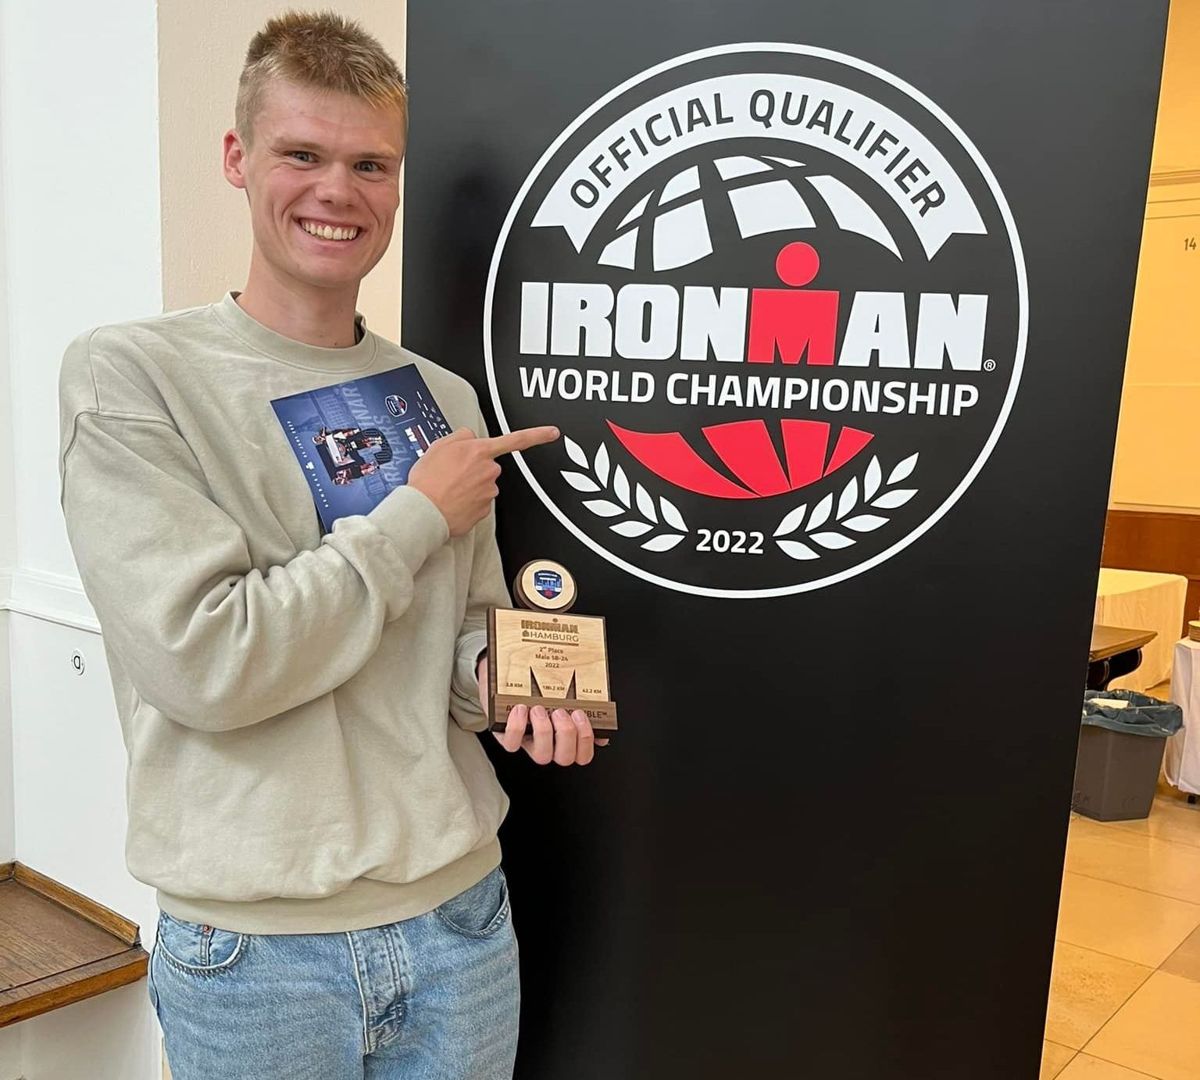 21-årige Mathias Jensen har kvalificeret sig til VM i Ironman på Hawaii til oktober.